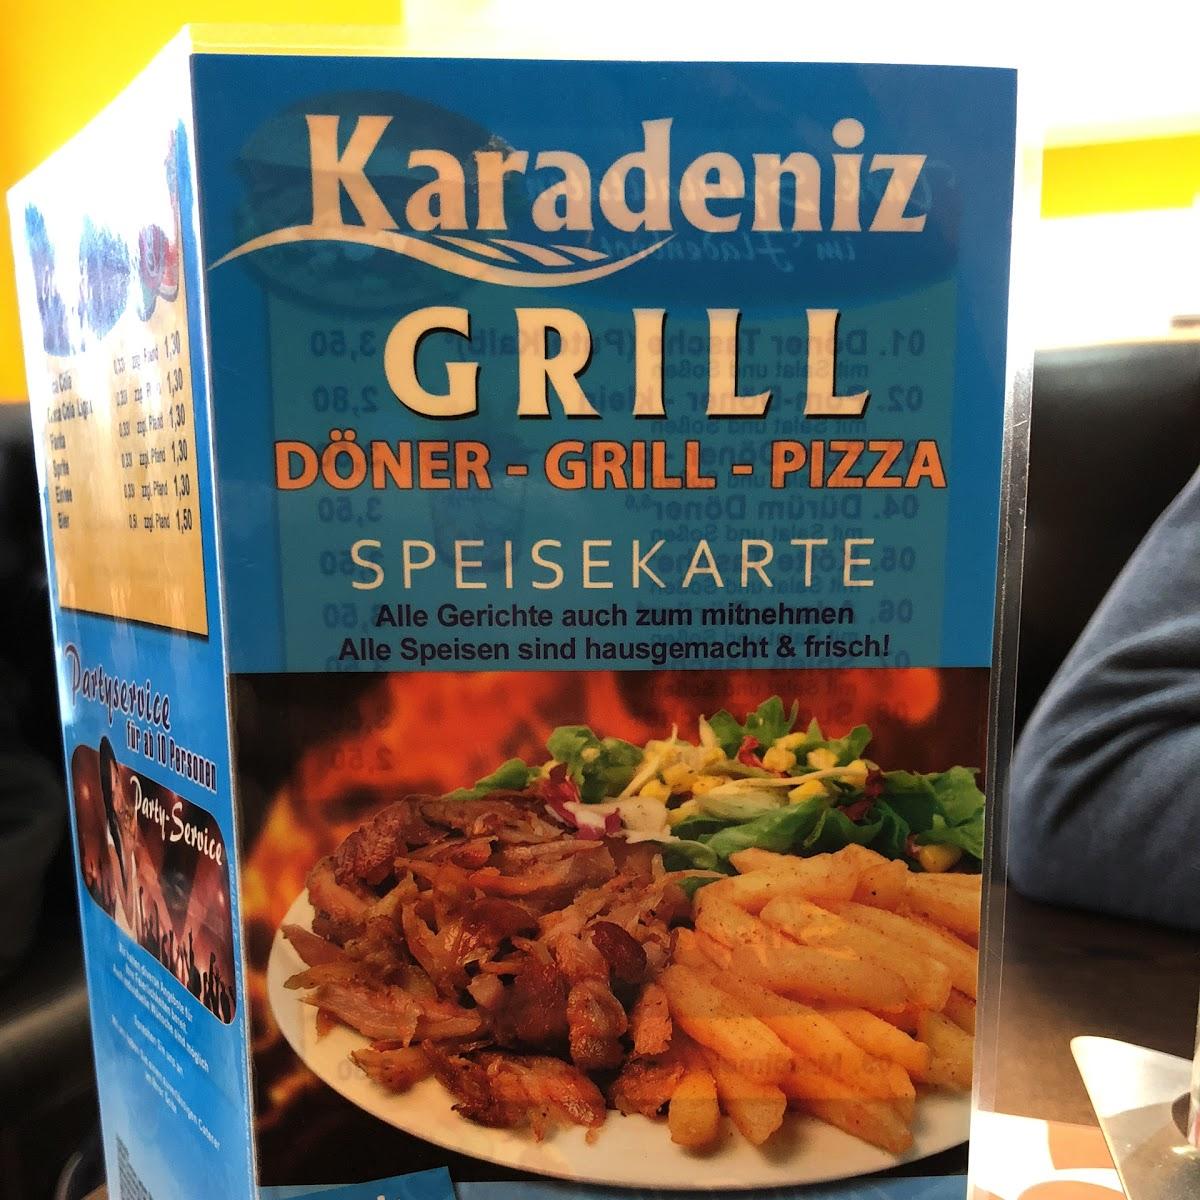 Restaurant "Karadeniz Grill" in Schwerte